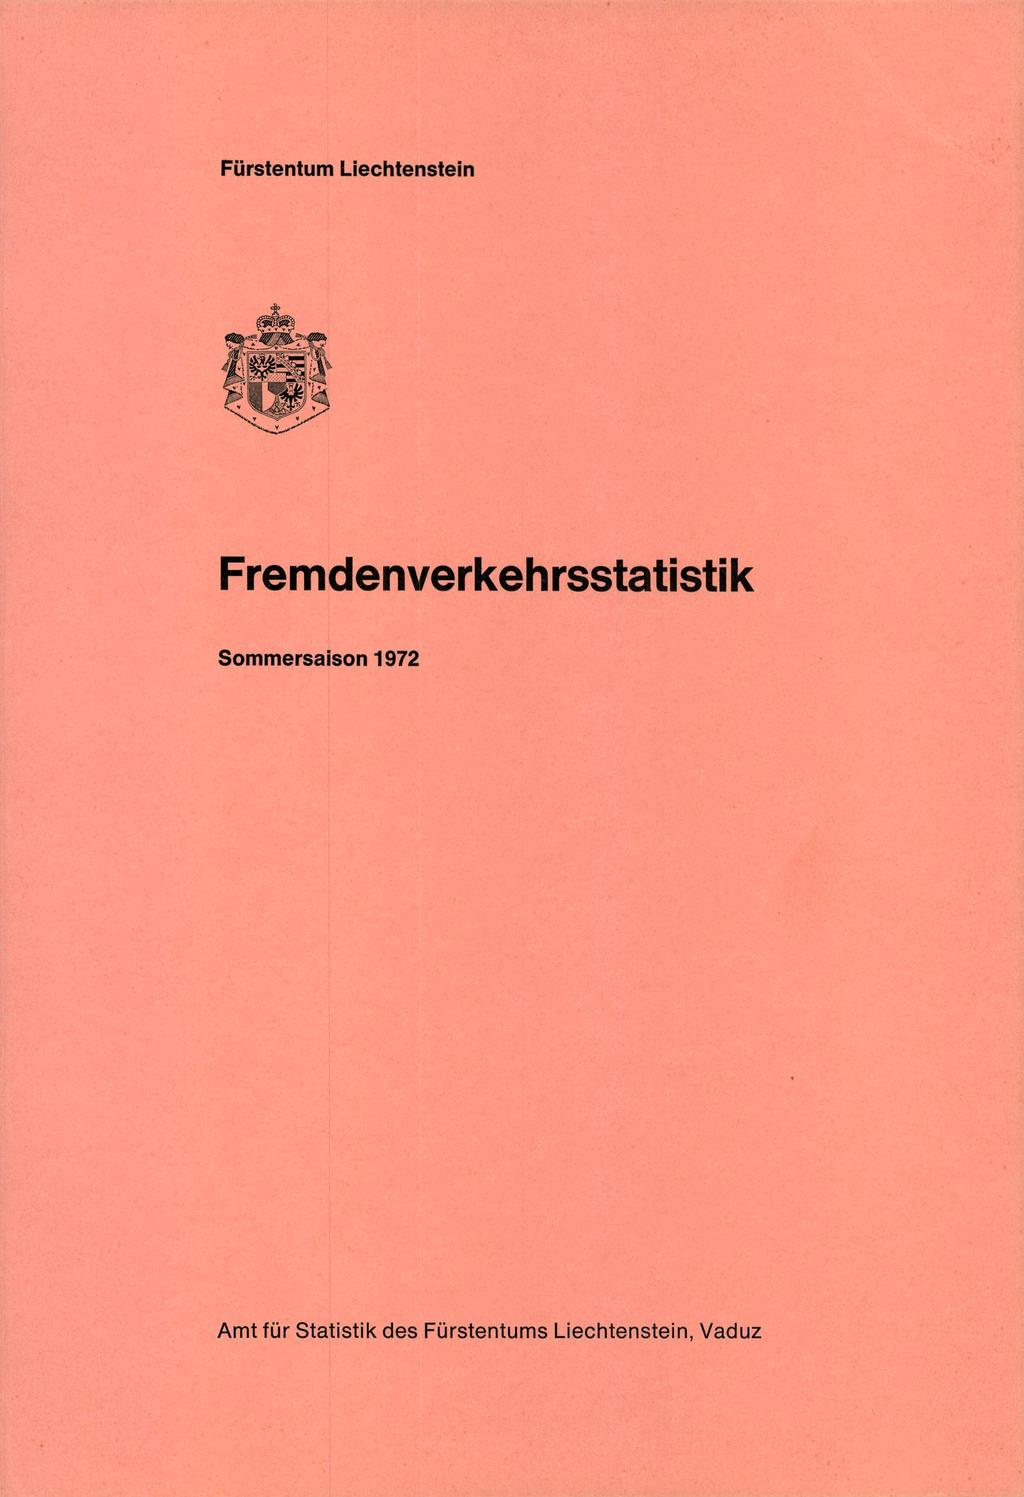 Fürstentum Liechtenstein Fremdenverkehrsstatistik